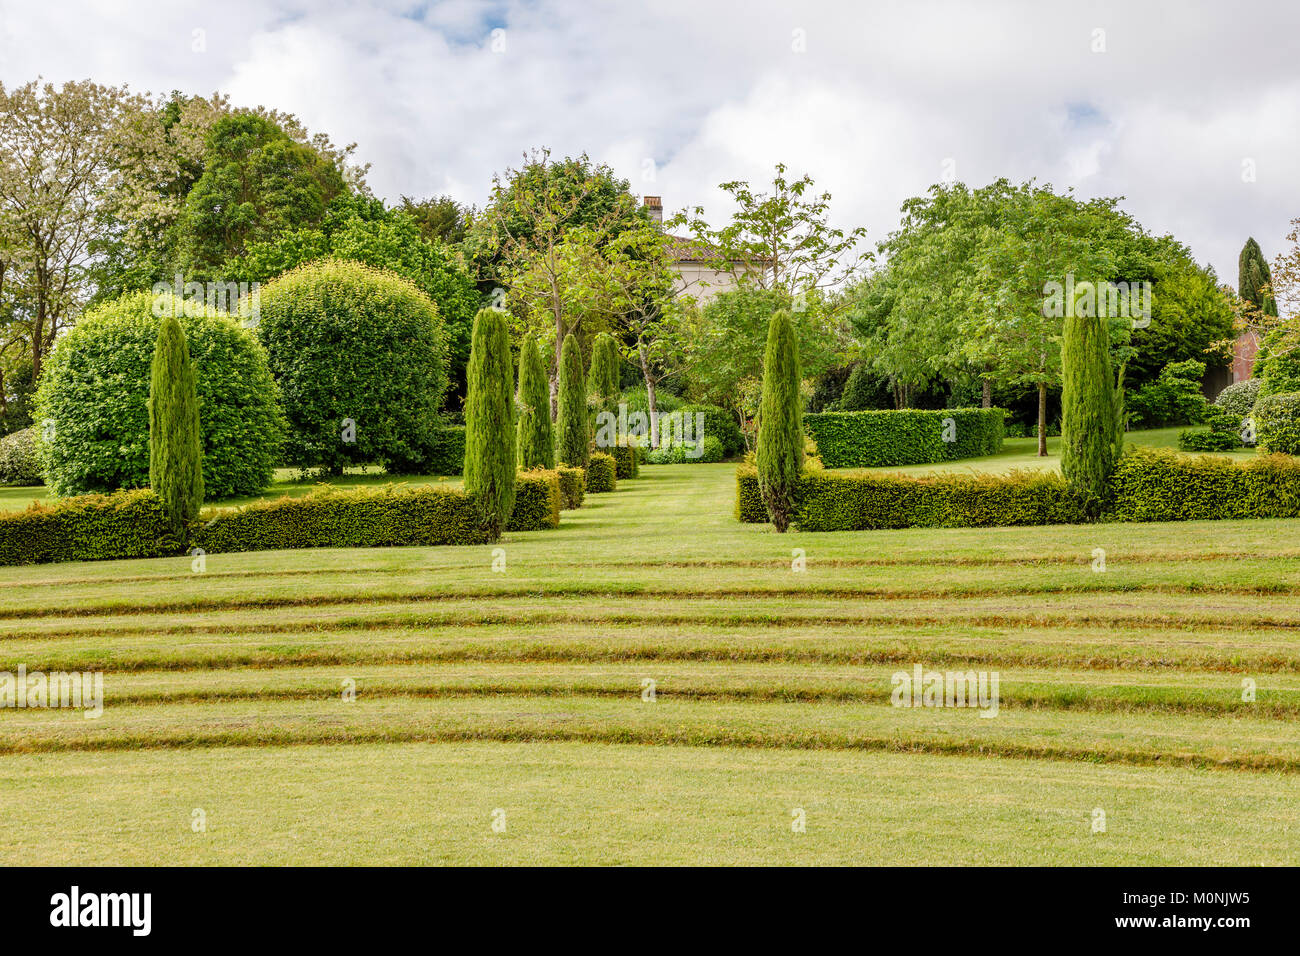 Theatre de verdure (green theatre) in the gardens of Les Jardins du Chaigne, Touzac, Grande Champagne Hills region, Nouvelle Aquitaine, SW France Stock Photo